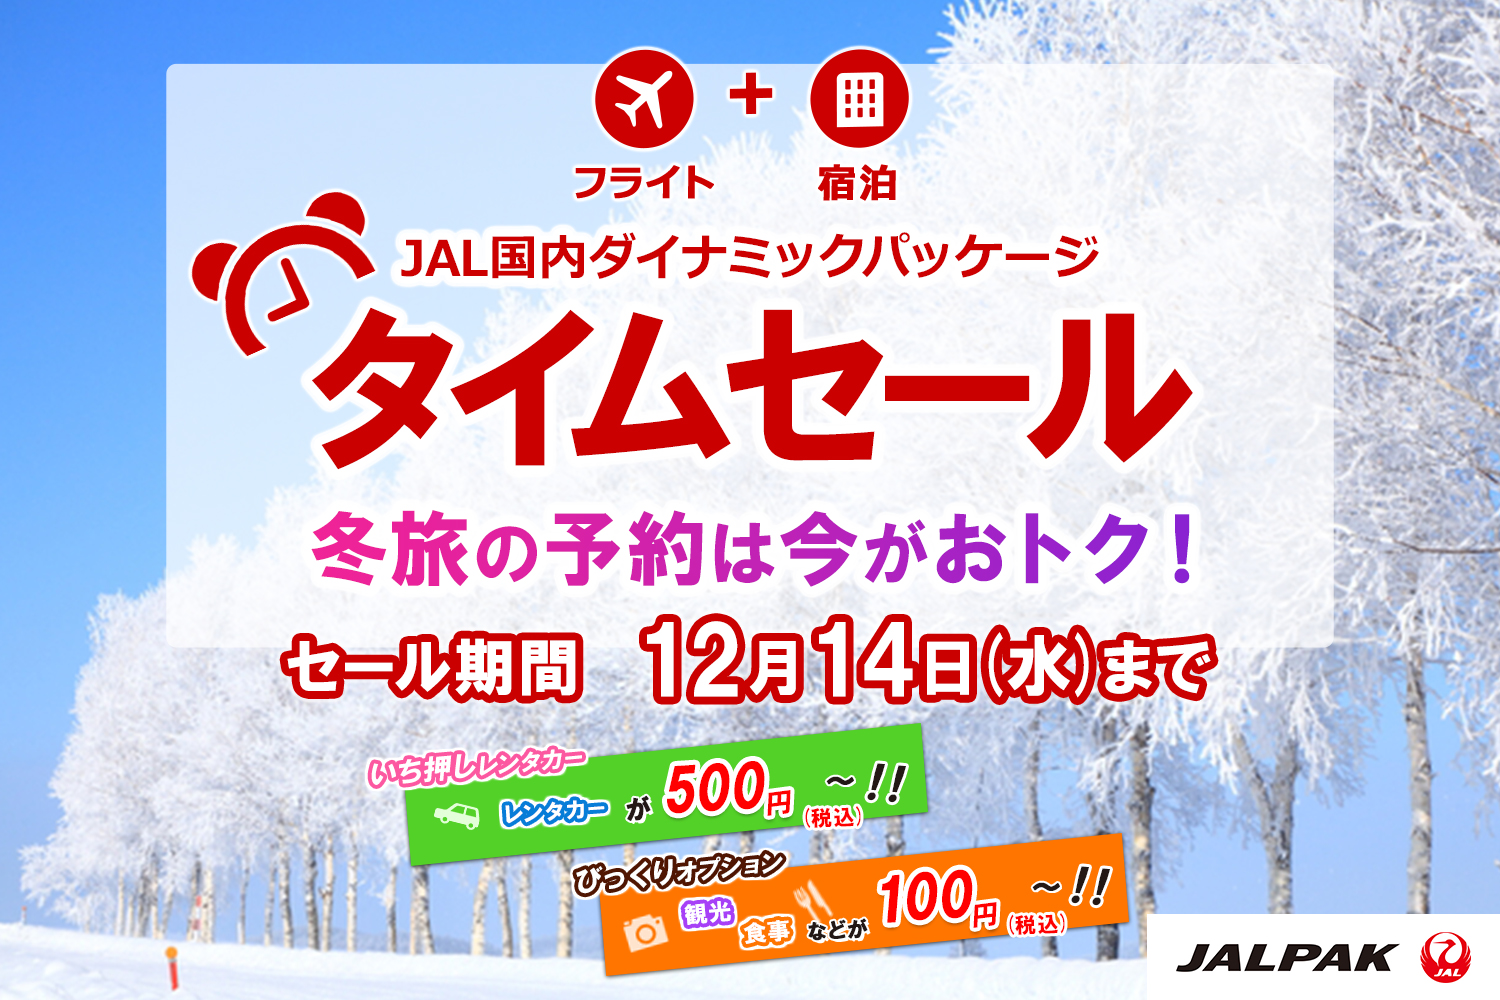 フライト ＋ 宿泊 JAL国内ダイナミックパッケージ タイムセール 冬旅の予約は今がおトク！ セール期間 12月14（水）まで いち押しレンタカー レンタカーが500円（税込）～！！ びっくりオプション 観光 食事などが100円（税込）～！！ JALPAK